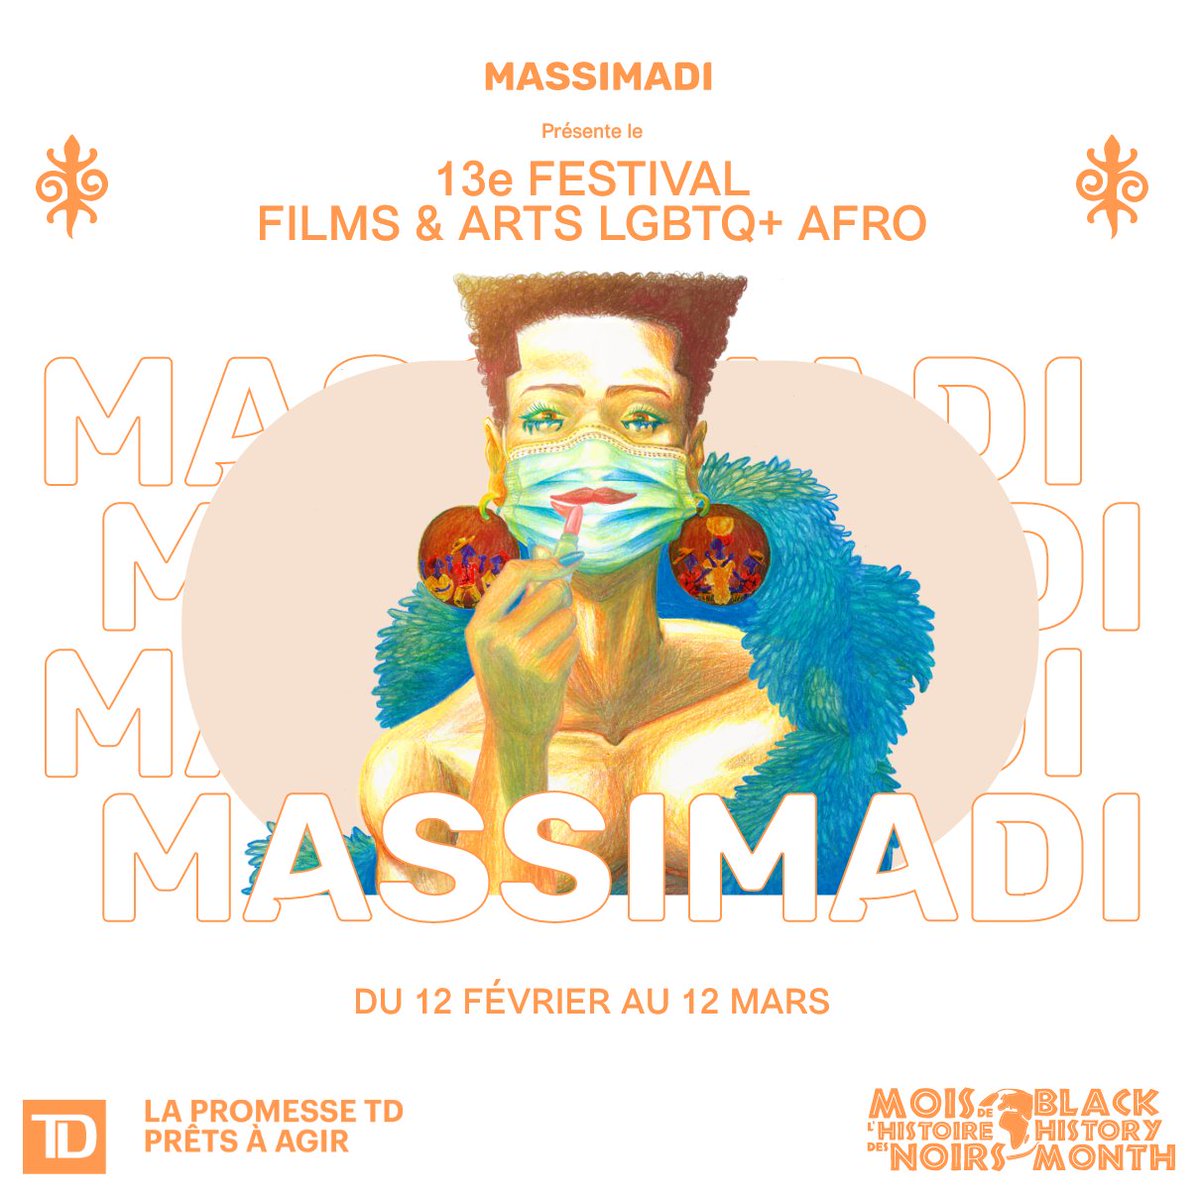 13e MASSIMADI: Festival des films et des arts LGBTQ+ afro du 12 février au 12 mars 2021